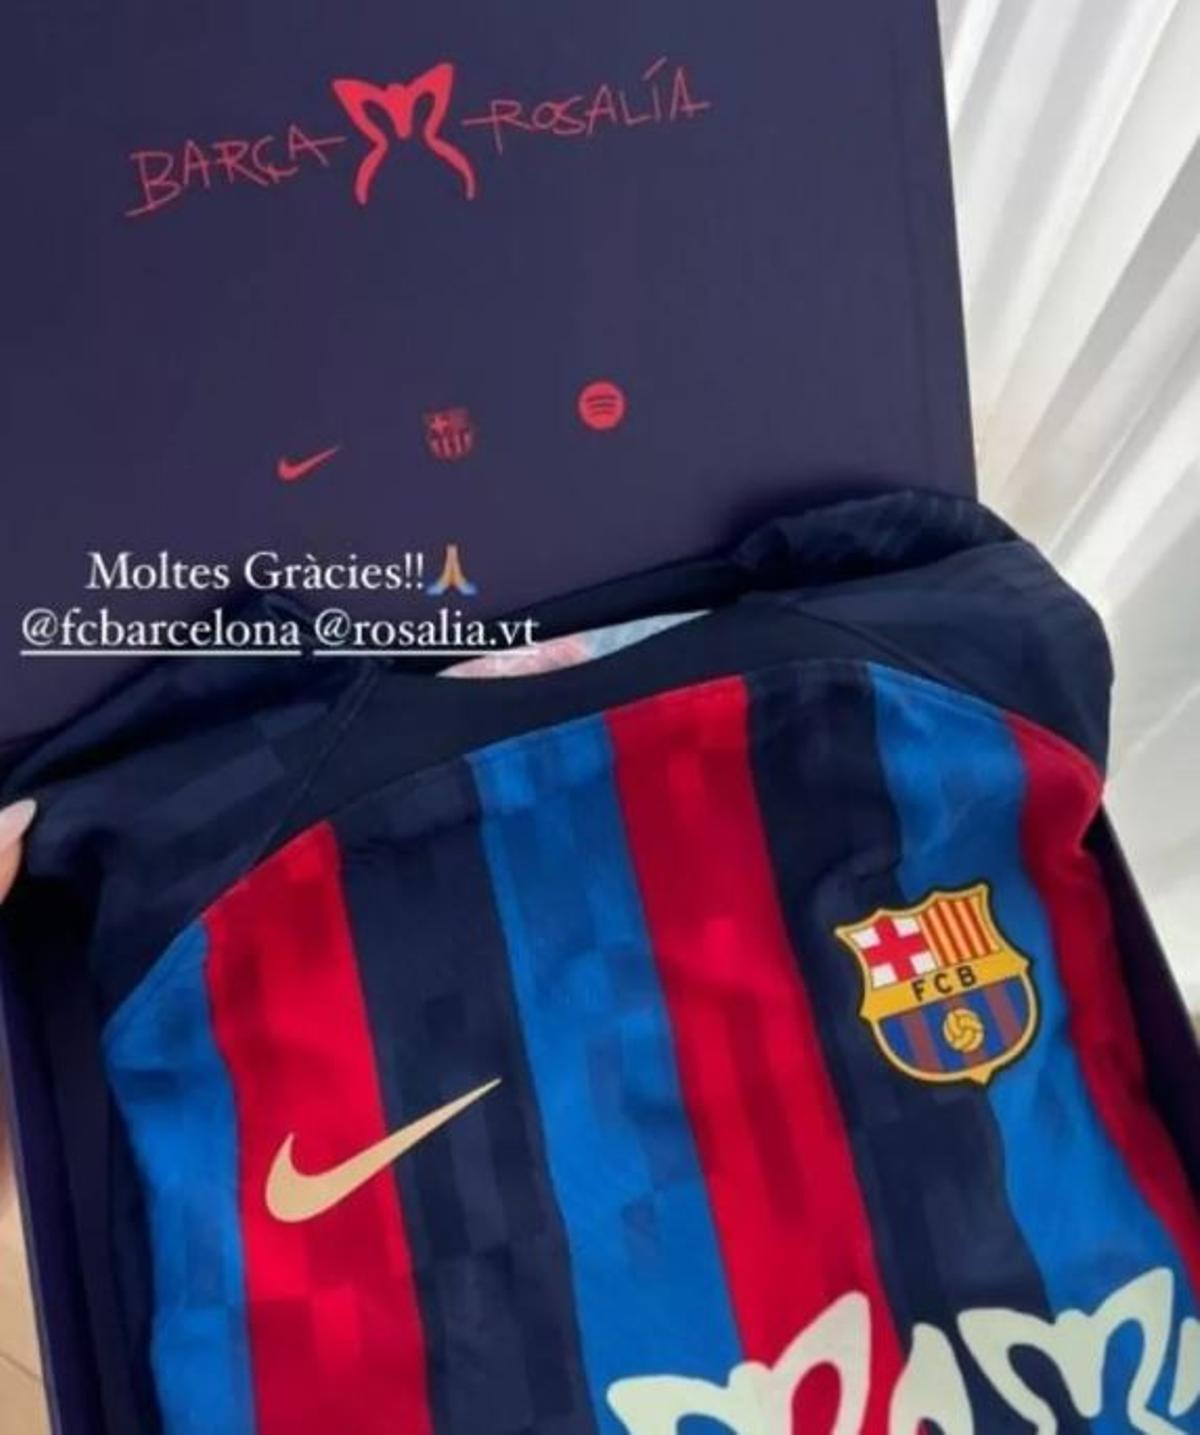 La samarreta que la influencer va rebre del FC Barcelona amb el logo de Rosalía